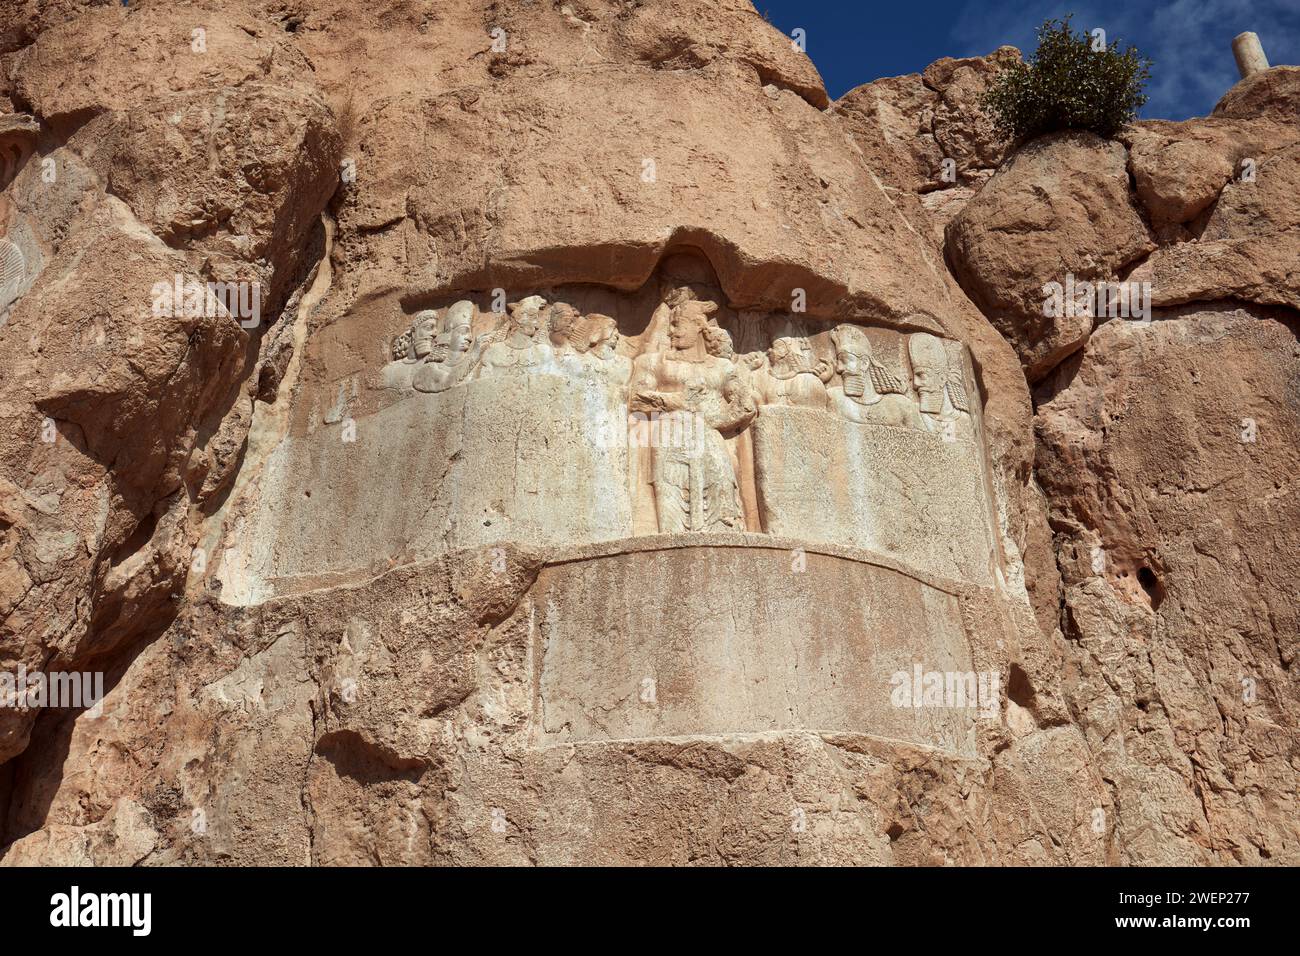 Rilievo rupestre del re persiano Bahram II e della sua famiglia reale scolpito sul rilievo di Elamiti datato al III millennio a.C. Naqsh-e Rostam Necropolis, Iran Foto Stock